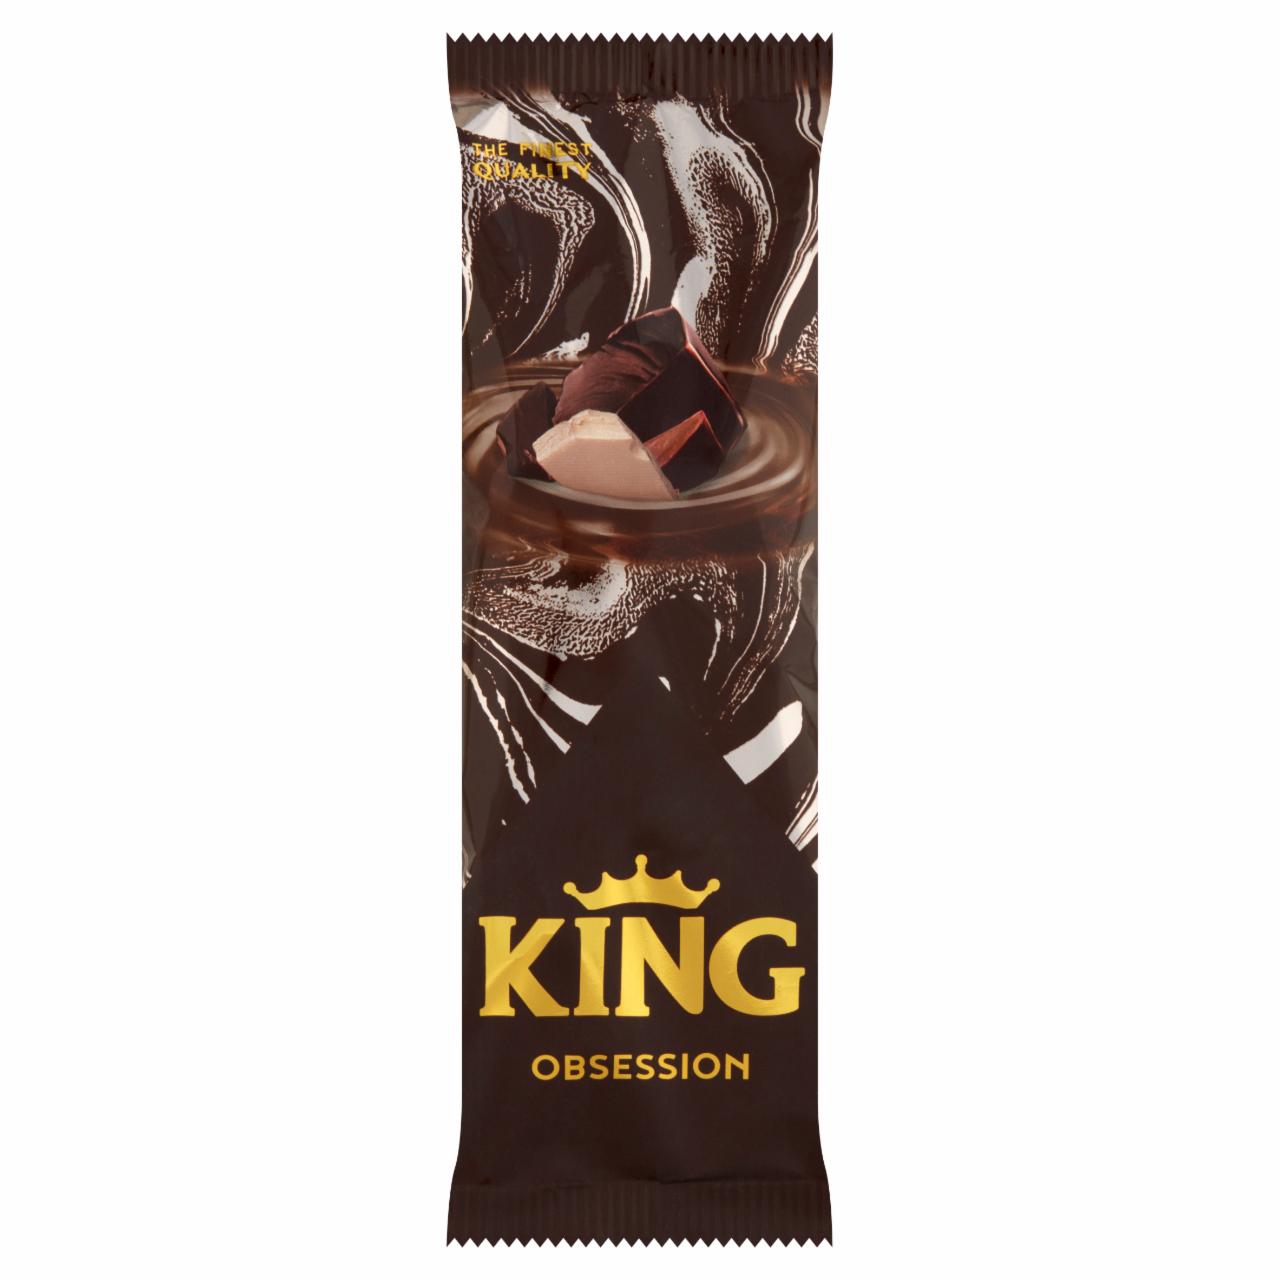 Képek - King Obsession fehér csokoládés és csokoládés jégkrém csokoládé ízű töltelékkel 100 ml